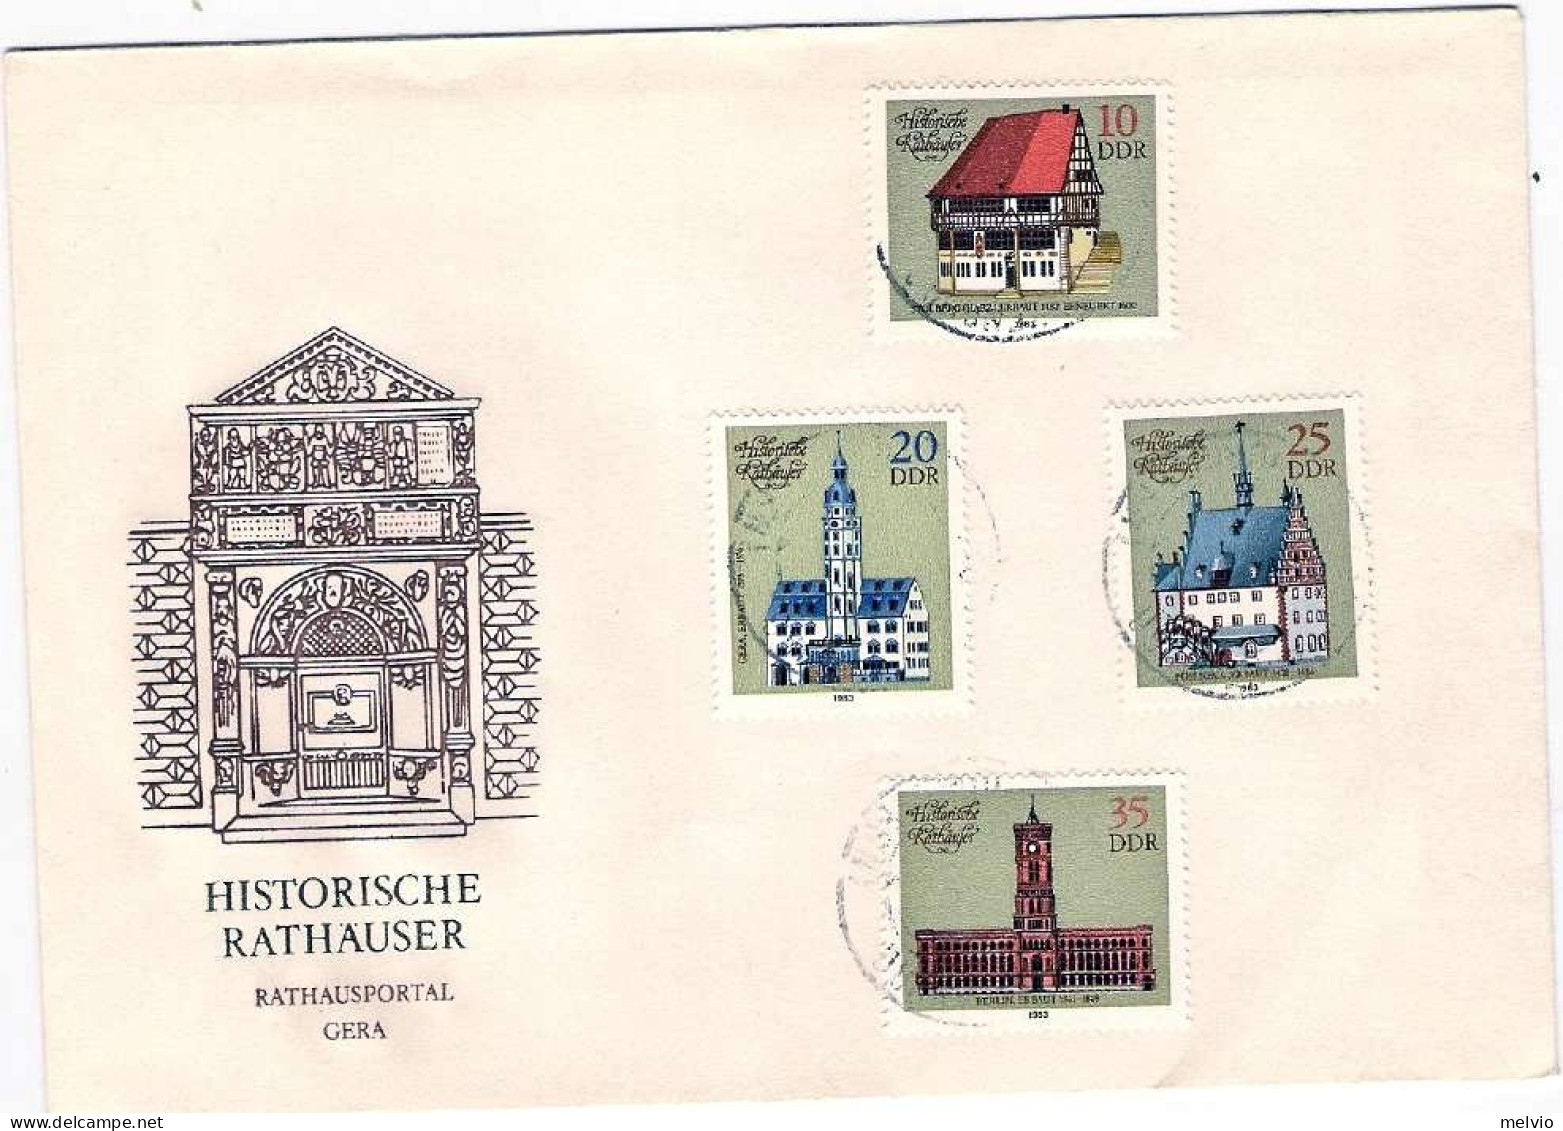 1983-Germania DDR S.4v."Municipi Storici"su Fdc Illustrata, Annullo Di Favore - Briefe U. Dokumente